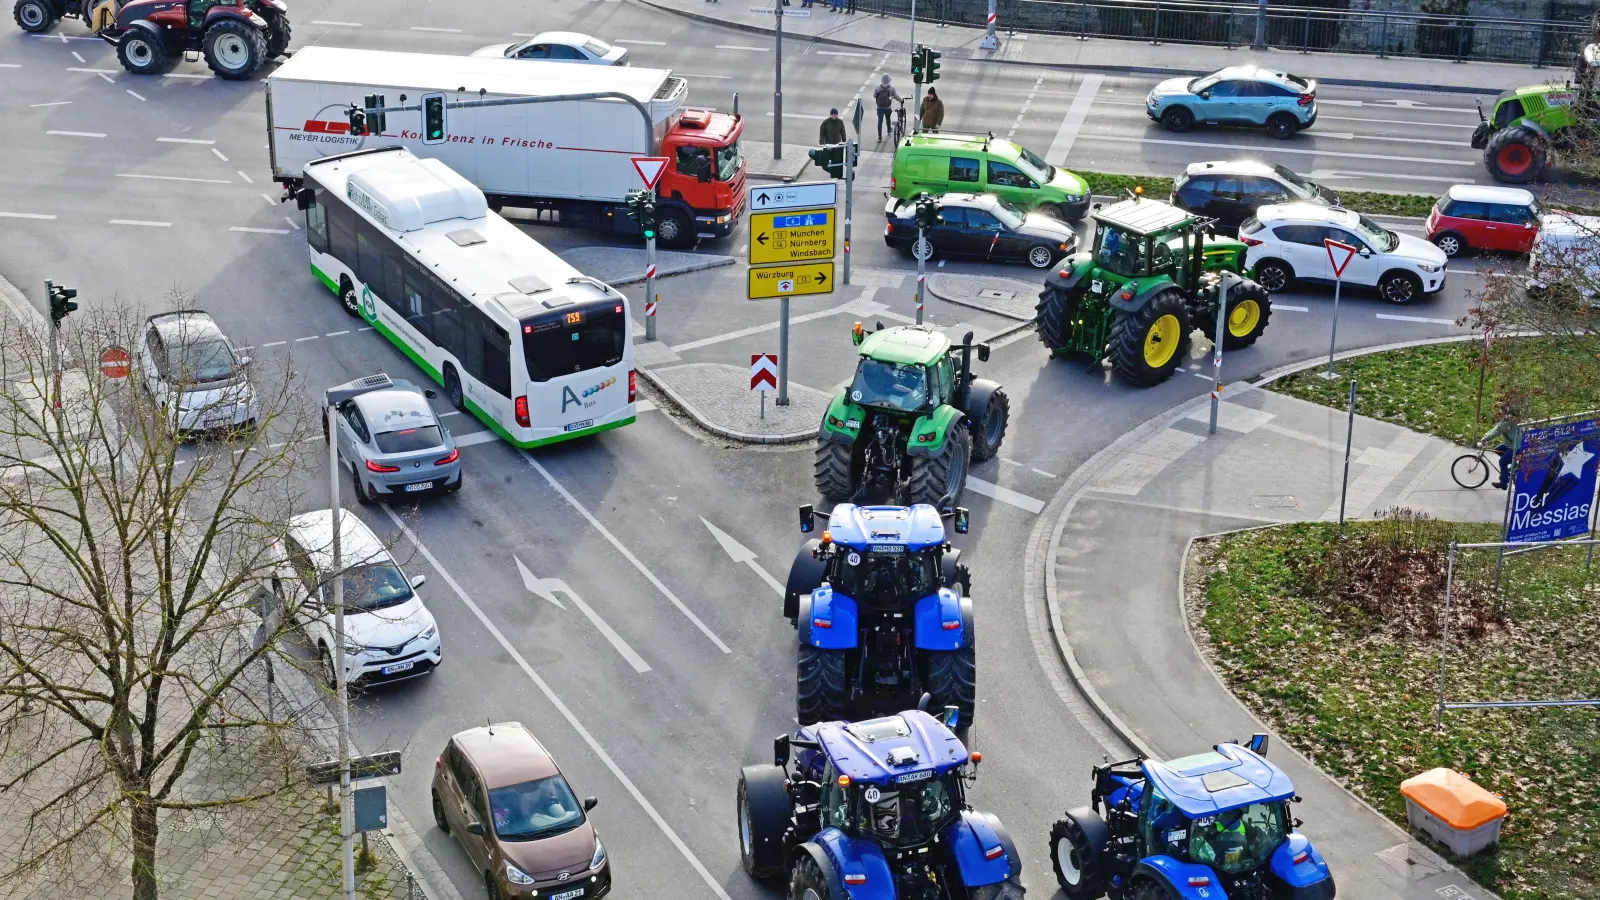 Am Montag legten Landwirte bereits in Ansbach große Teile des Verkehrs lahm. Für Pendler könnten anstrengende Tage folgen. (Foto: Jim Albright)